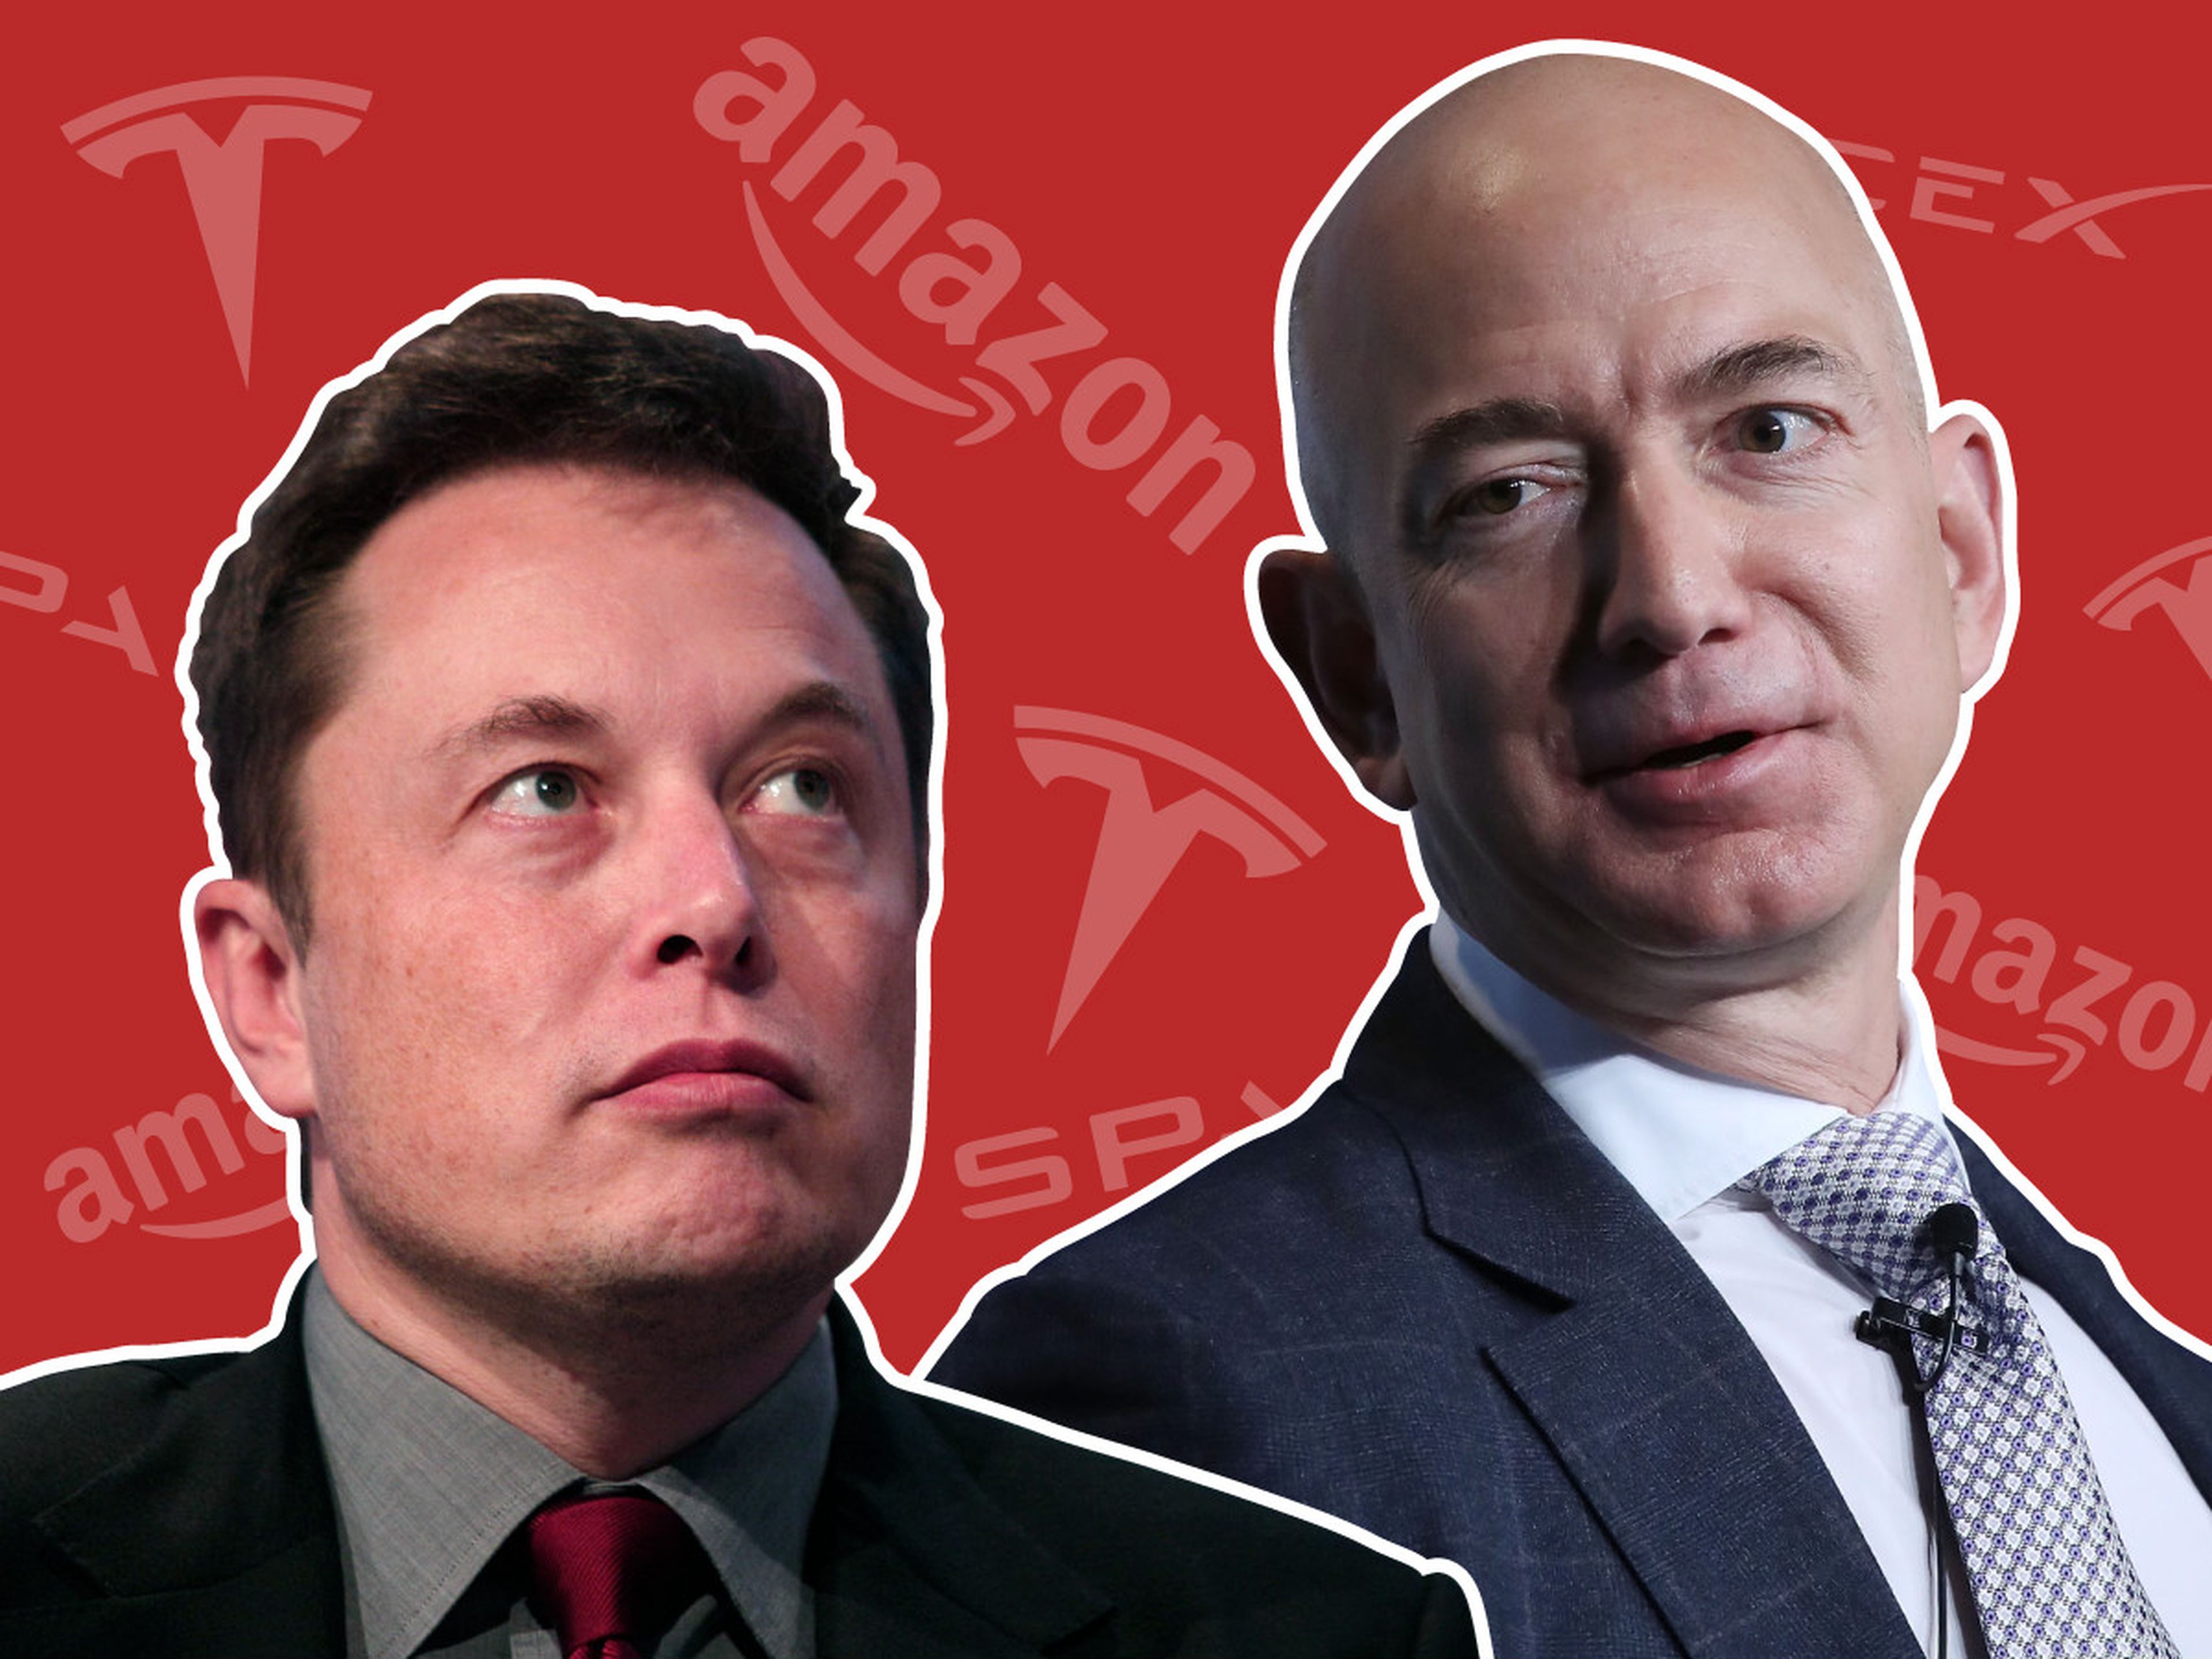 La batalla entre los dos iconos del mundo empresarial Elon Musk y Jeff Bezos.